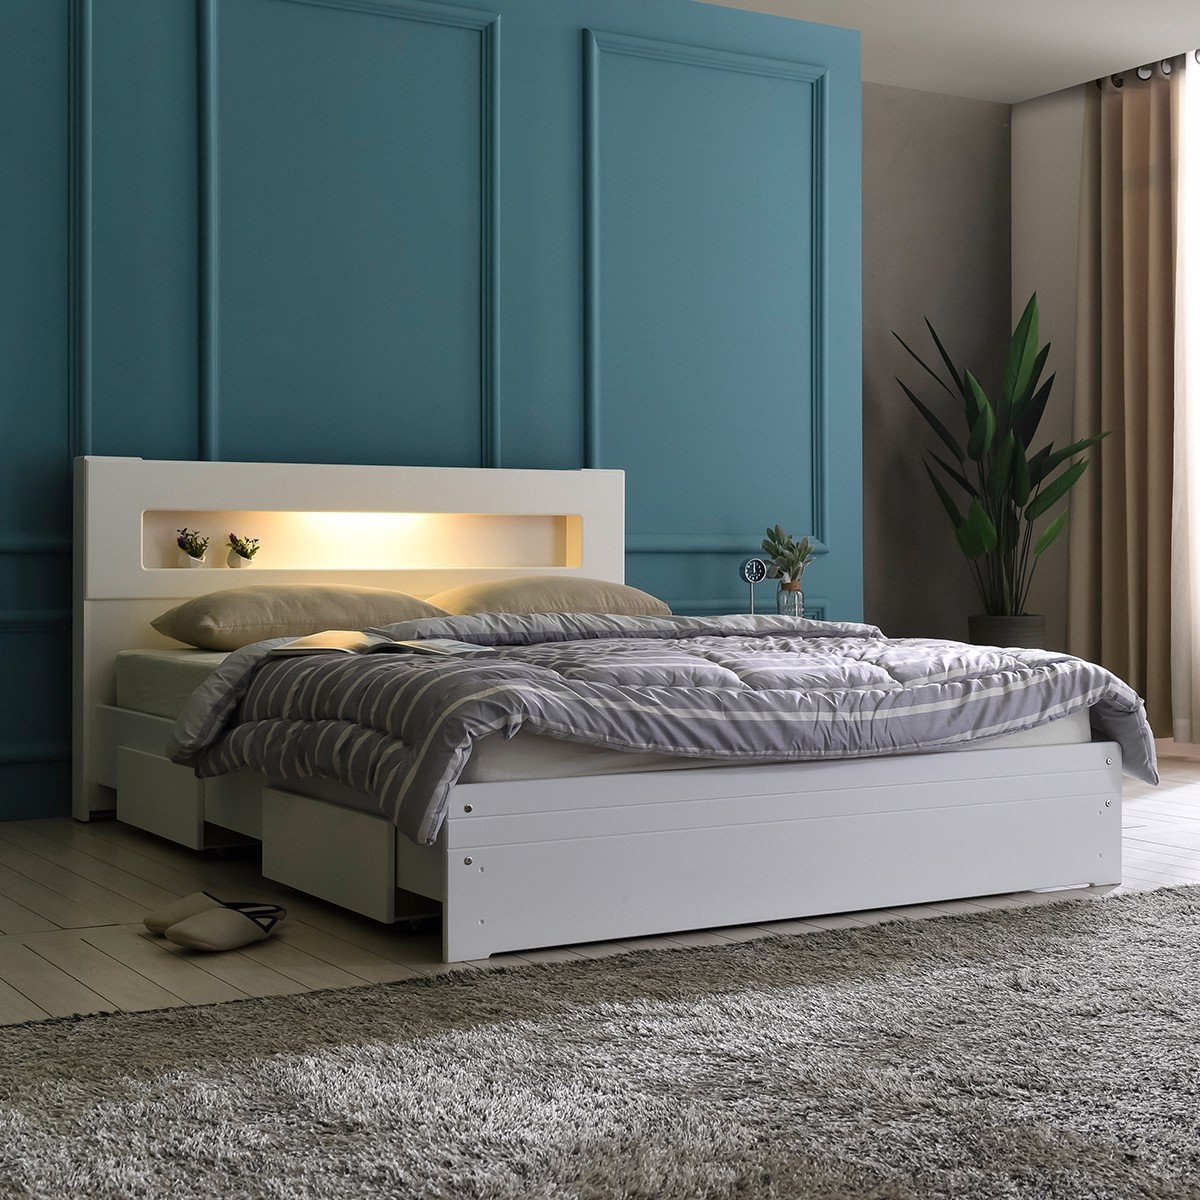 Cách đặt giường ngủ vừa thẩm mỹ vừa hợp phong thủy mà bạn nên biết